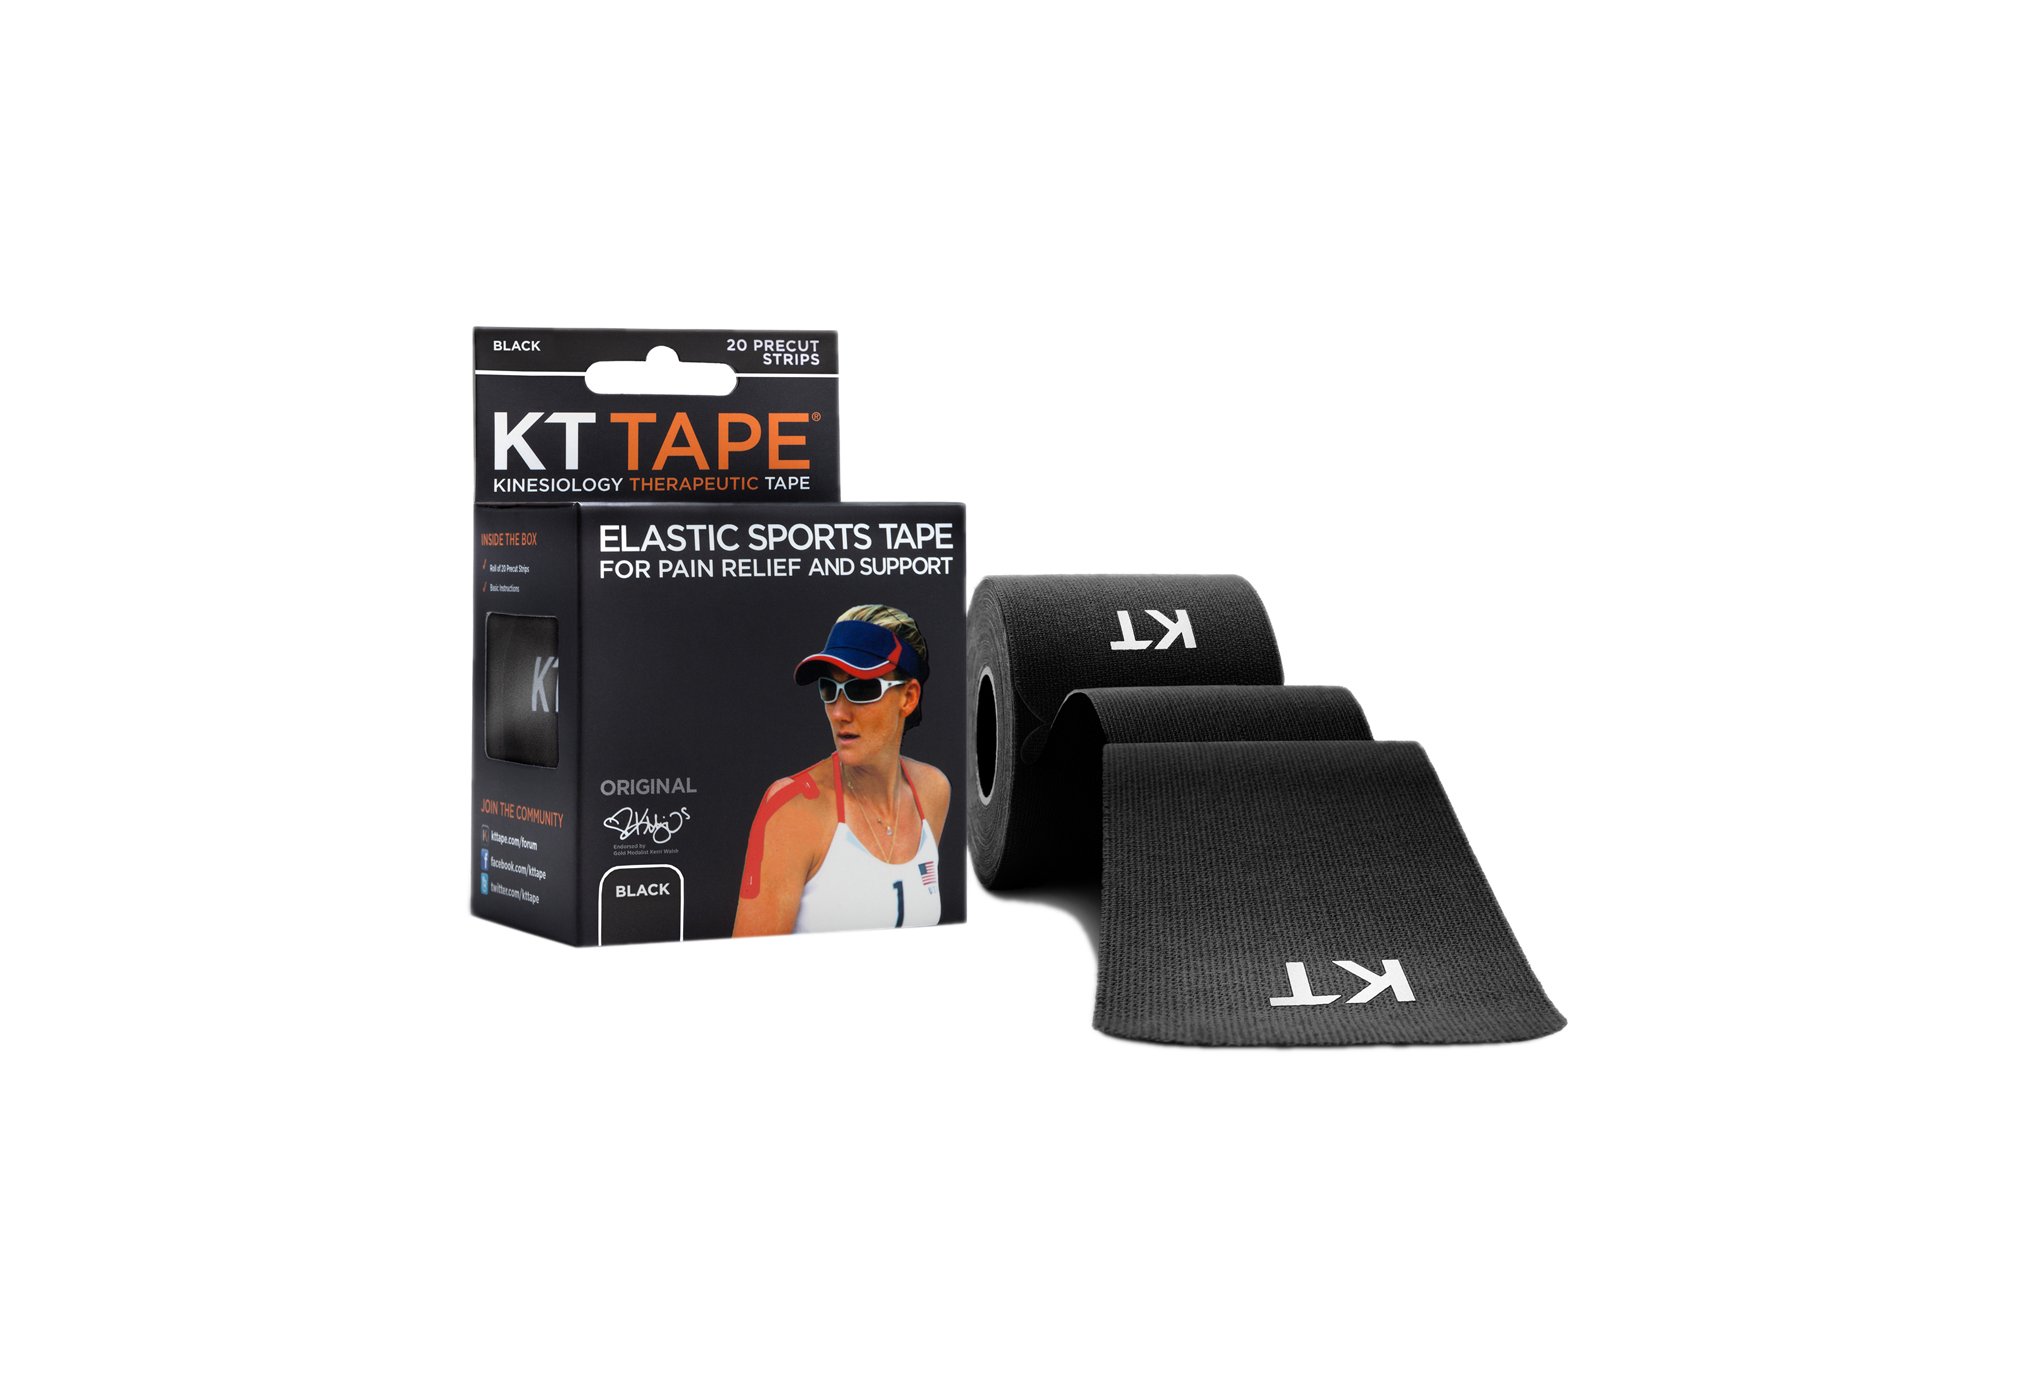 KT Tape Original Coton Pré-découpé Protection musculaire & articulaire